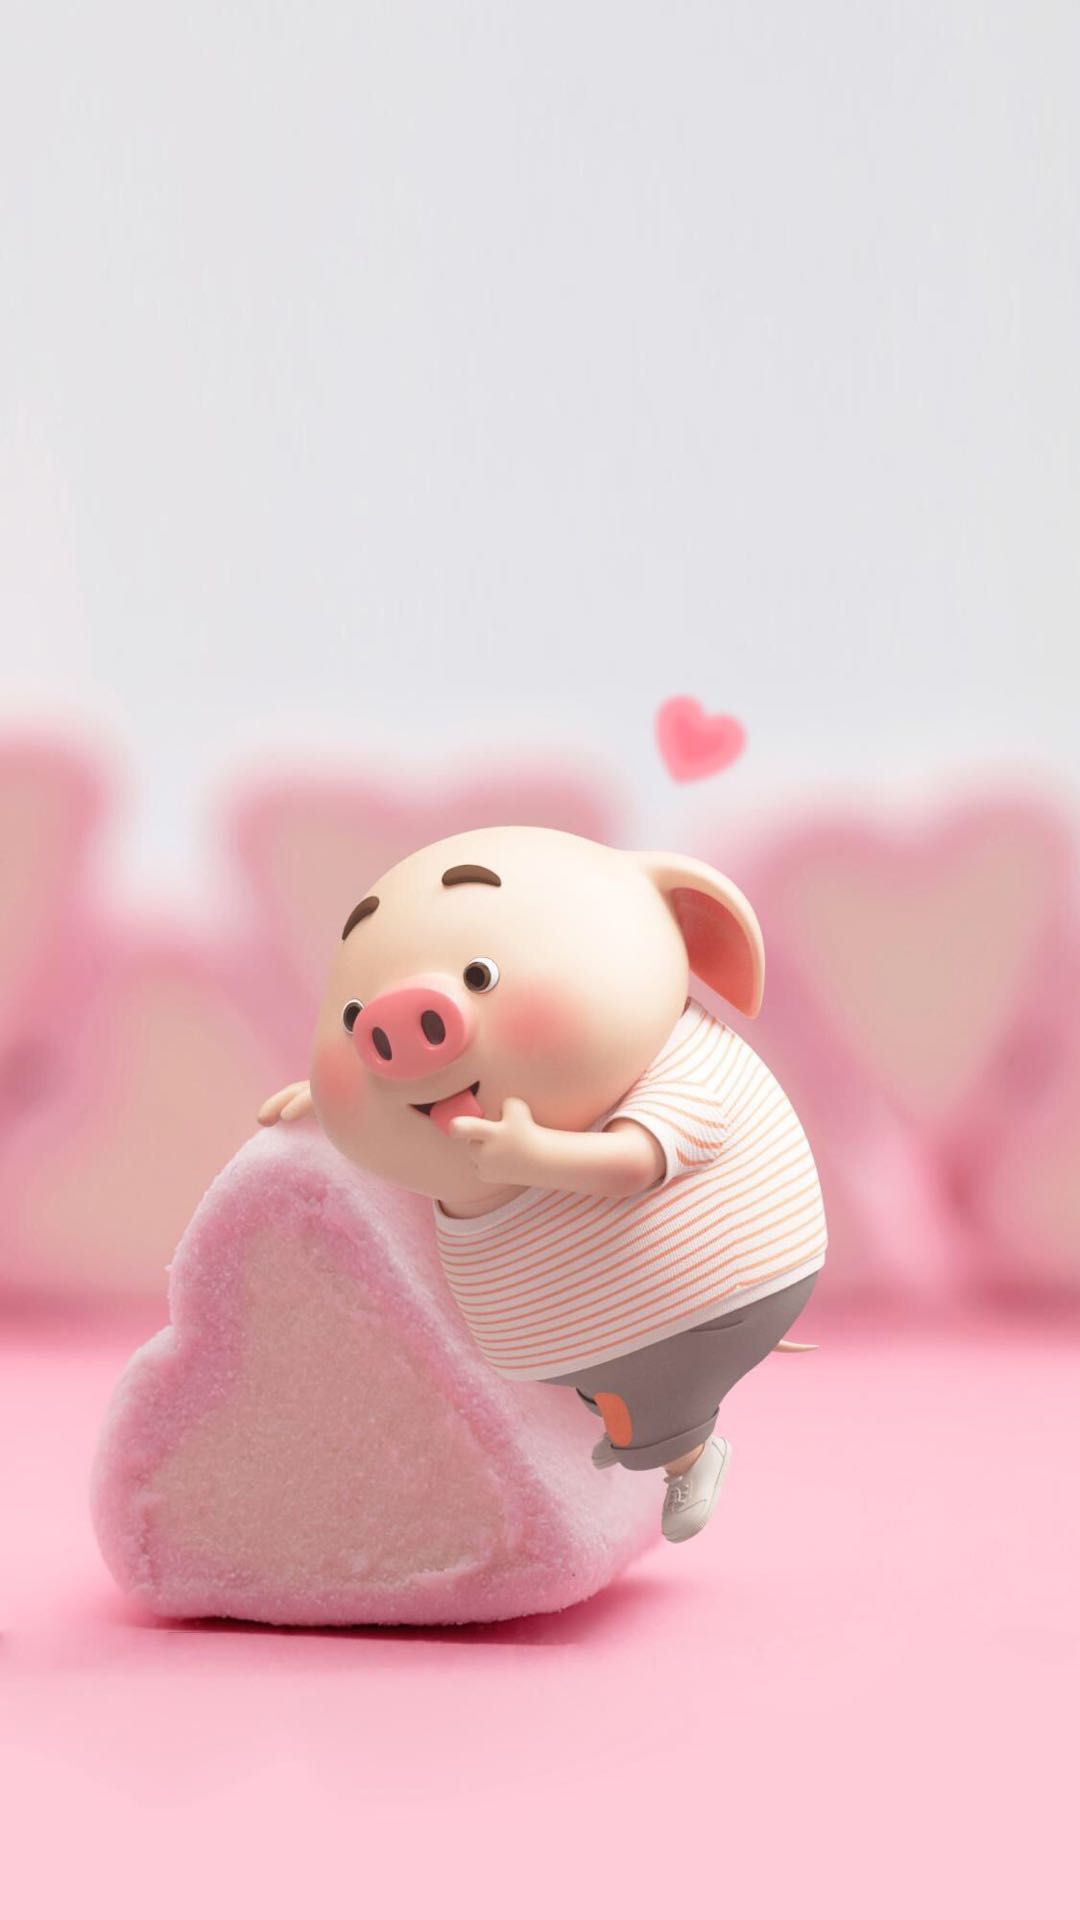 Cute Pig Catoon 3d - Cute Pig Cartoon 3d , HD Wallpaper & Backgrounds